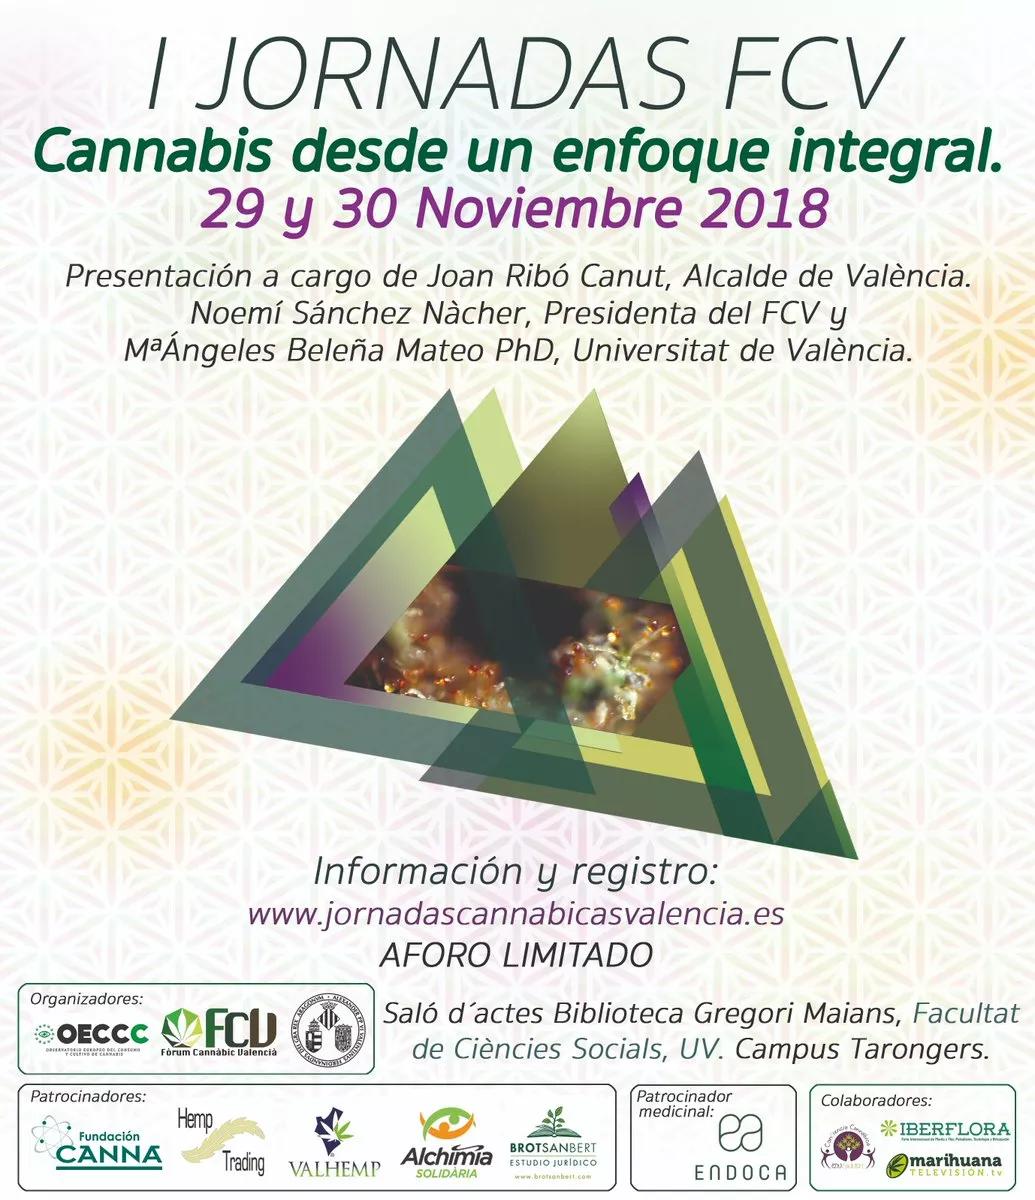 Jornadas en la Universidad de Valencia “Cannabis desde un enfoque integral”